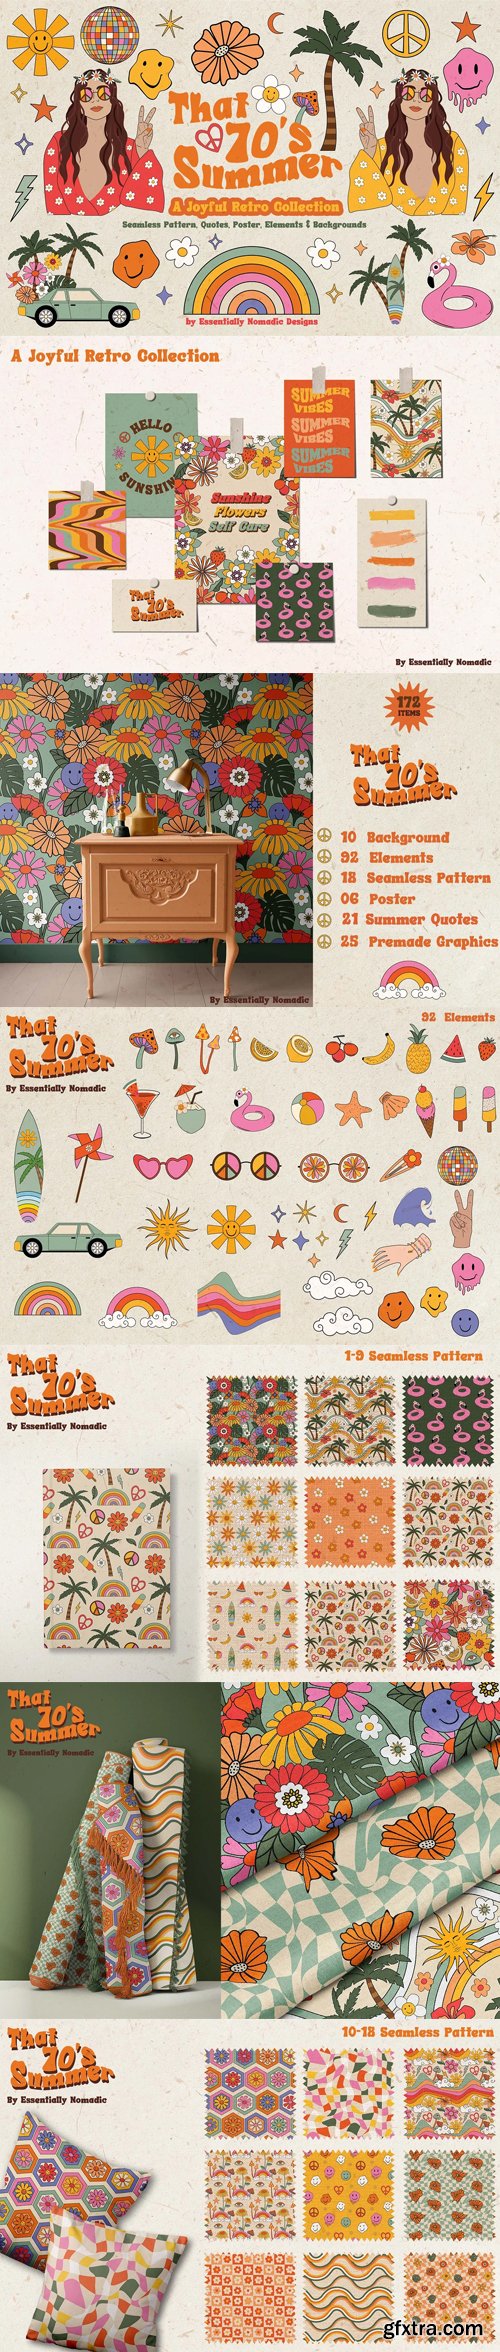 CreativeMarket - A Joyful Retro Graphic Collection - 7151881